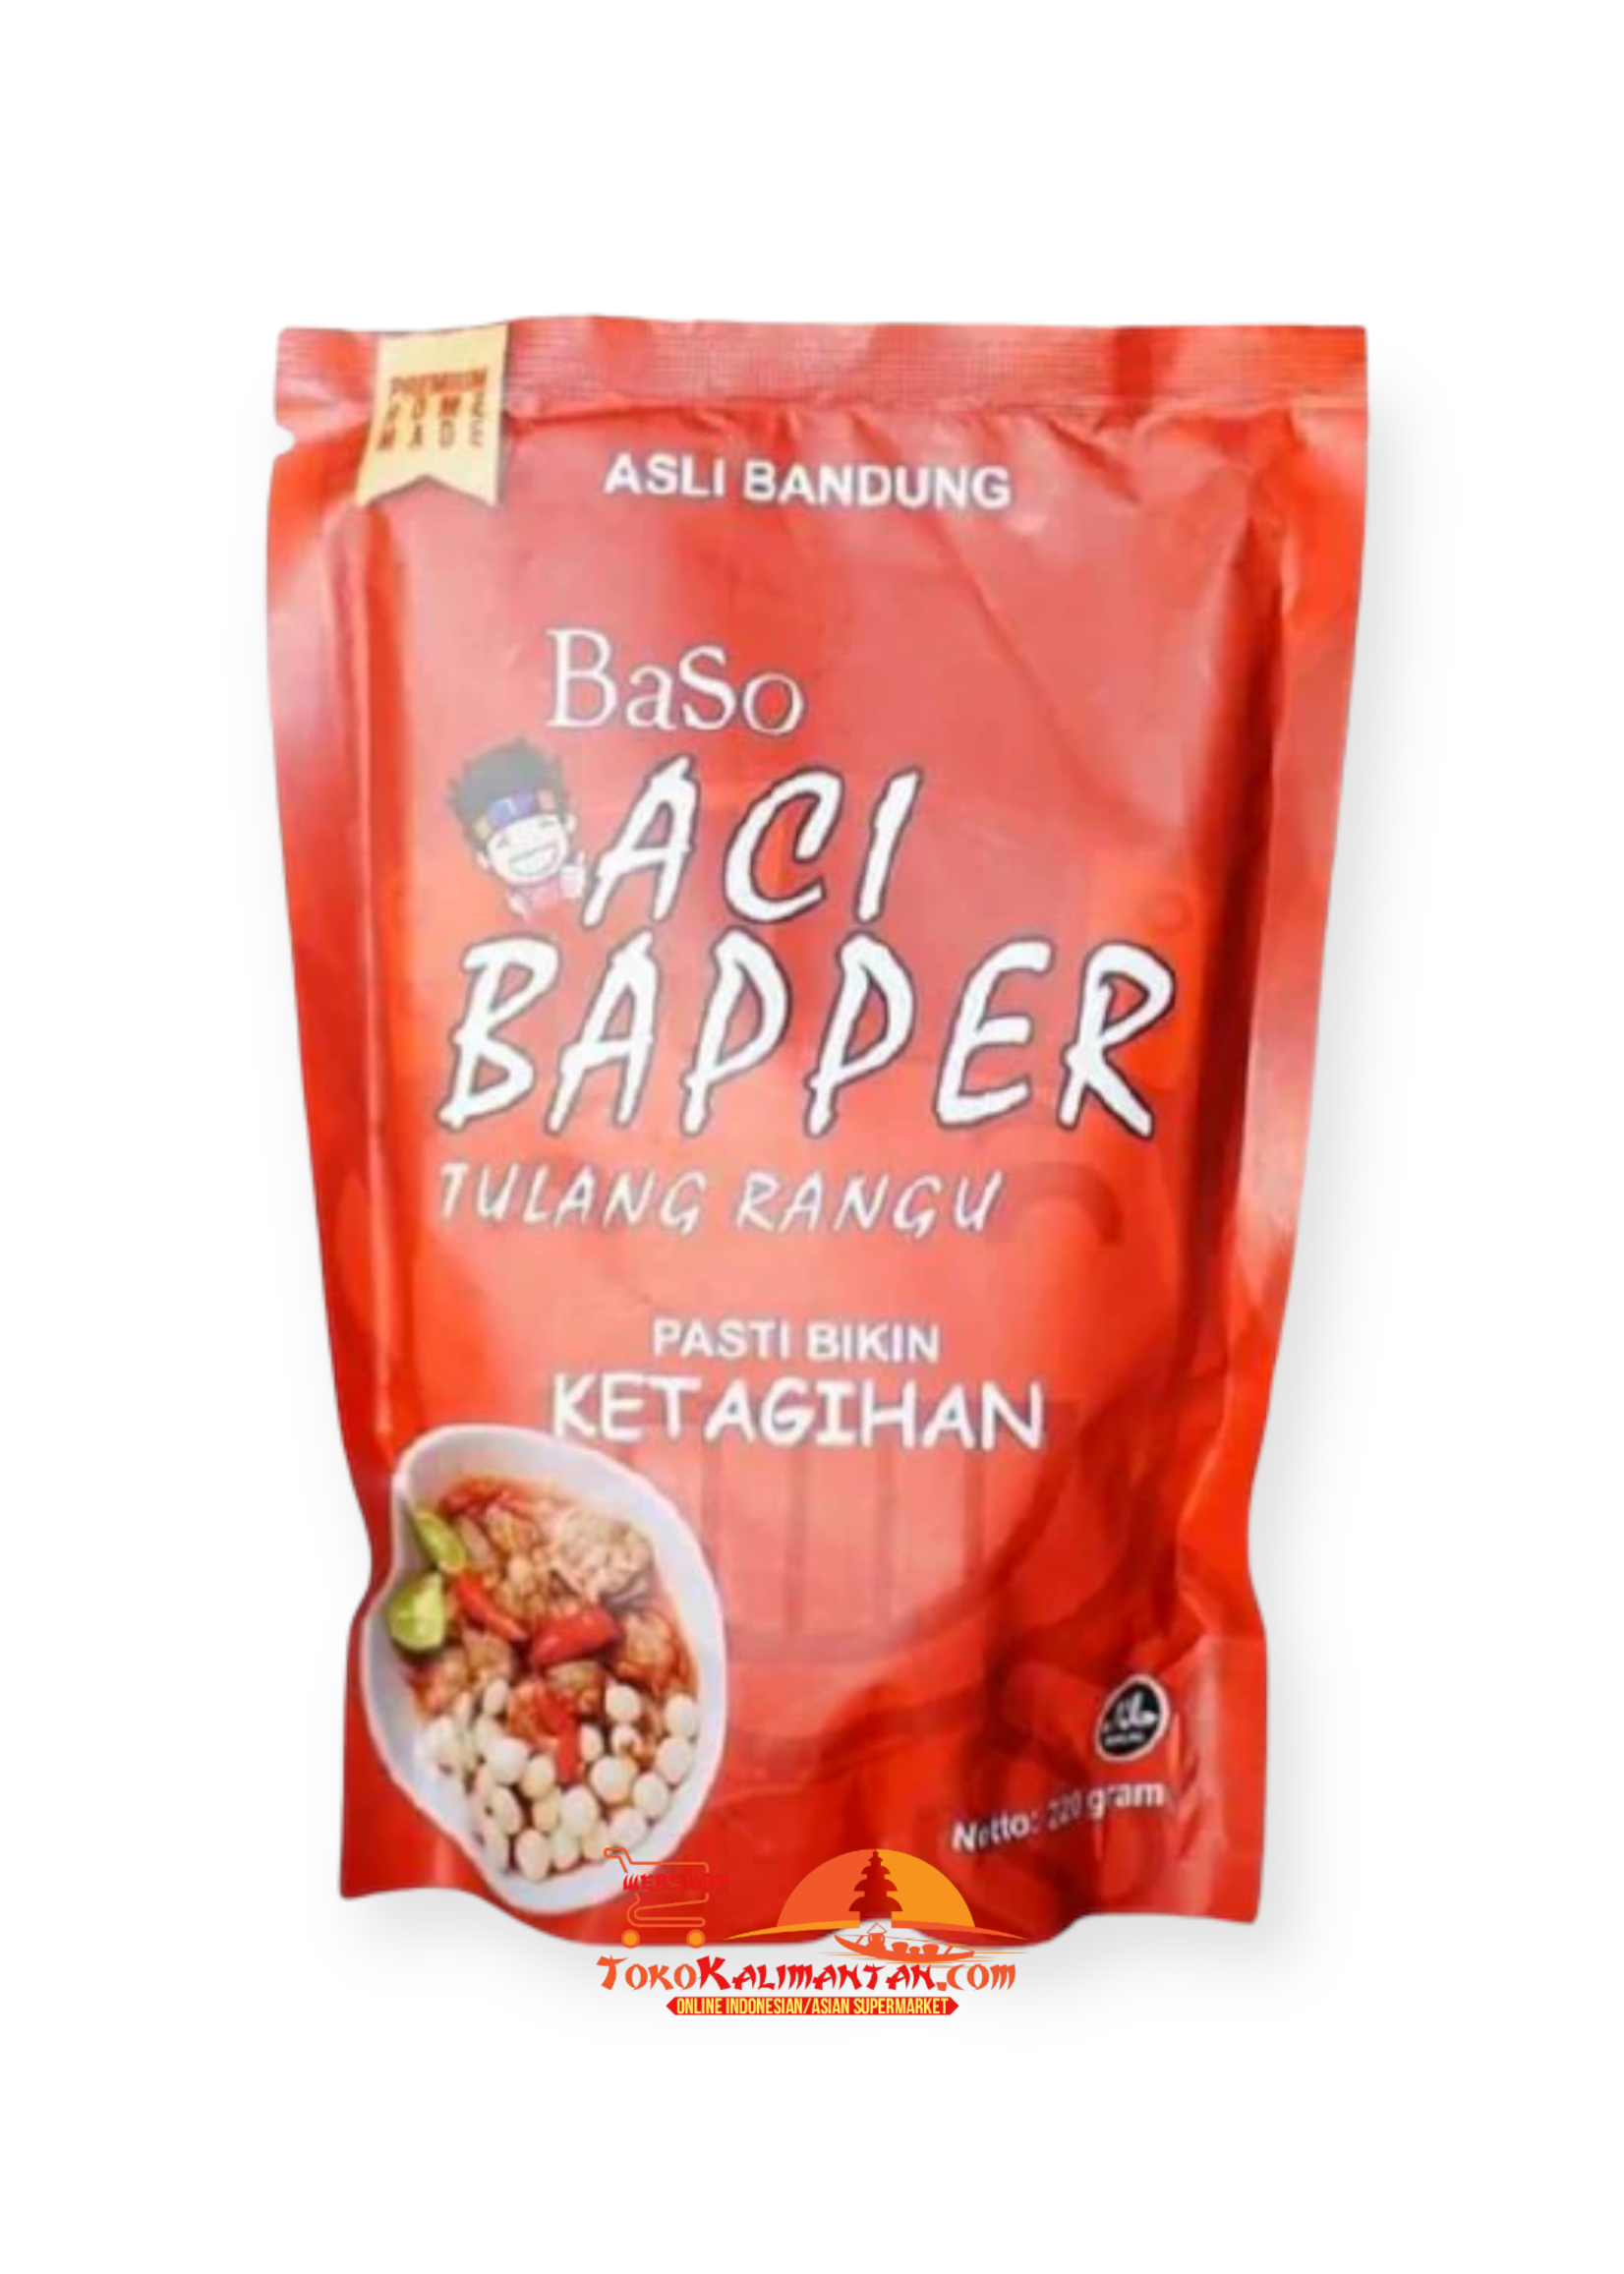 Baso Aci Baso Aci - Bapper